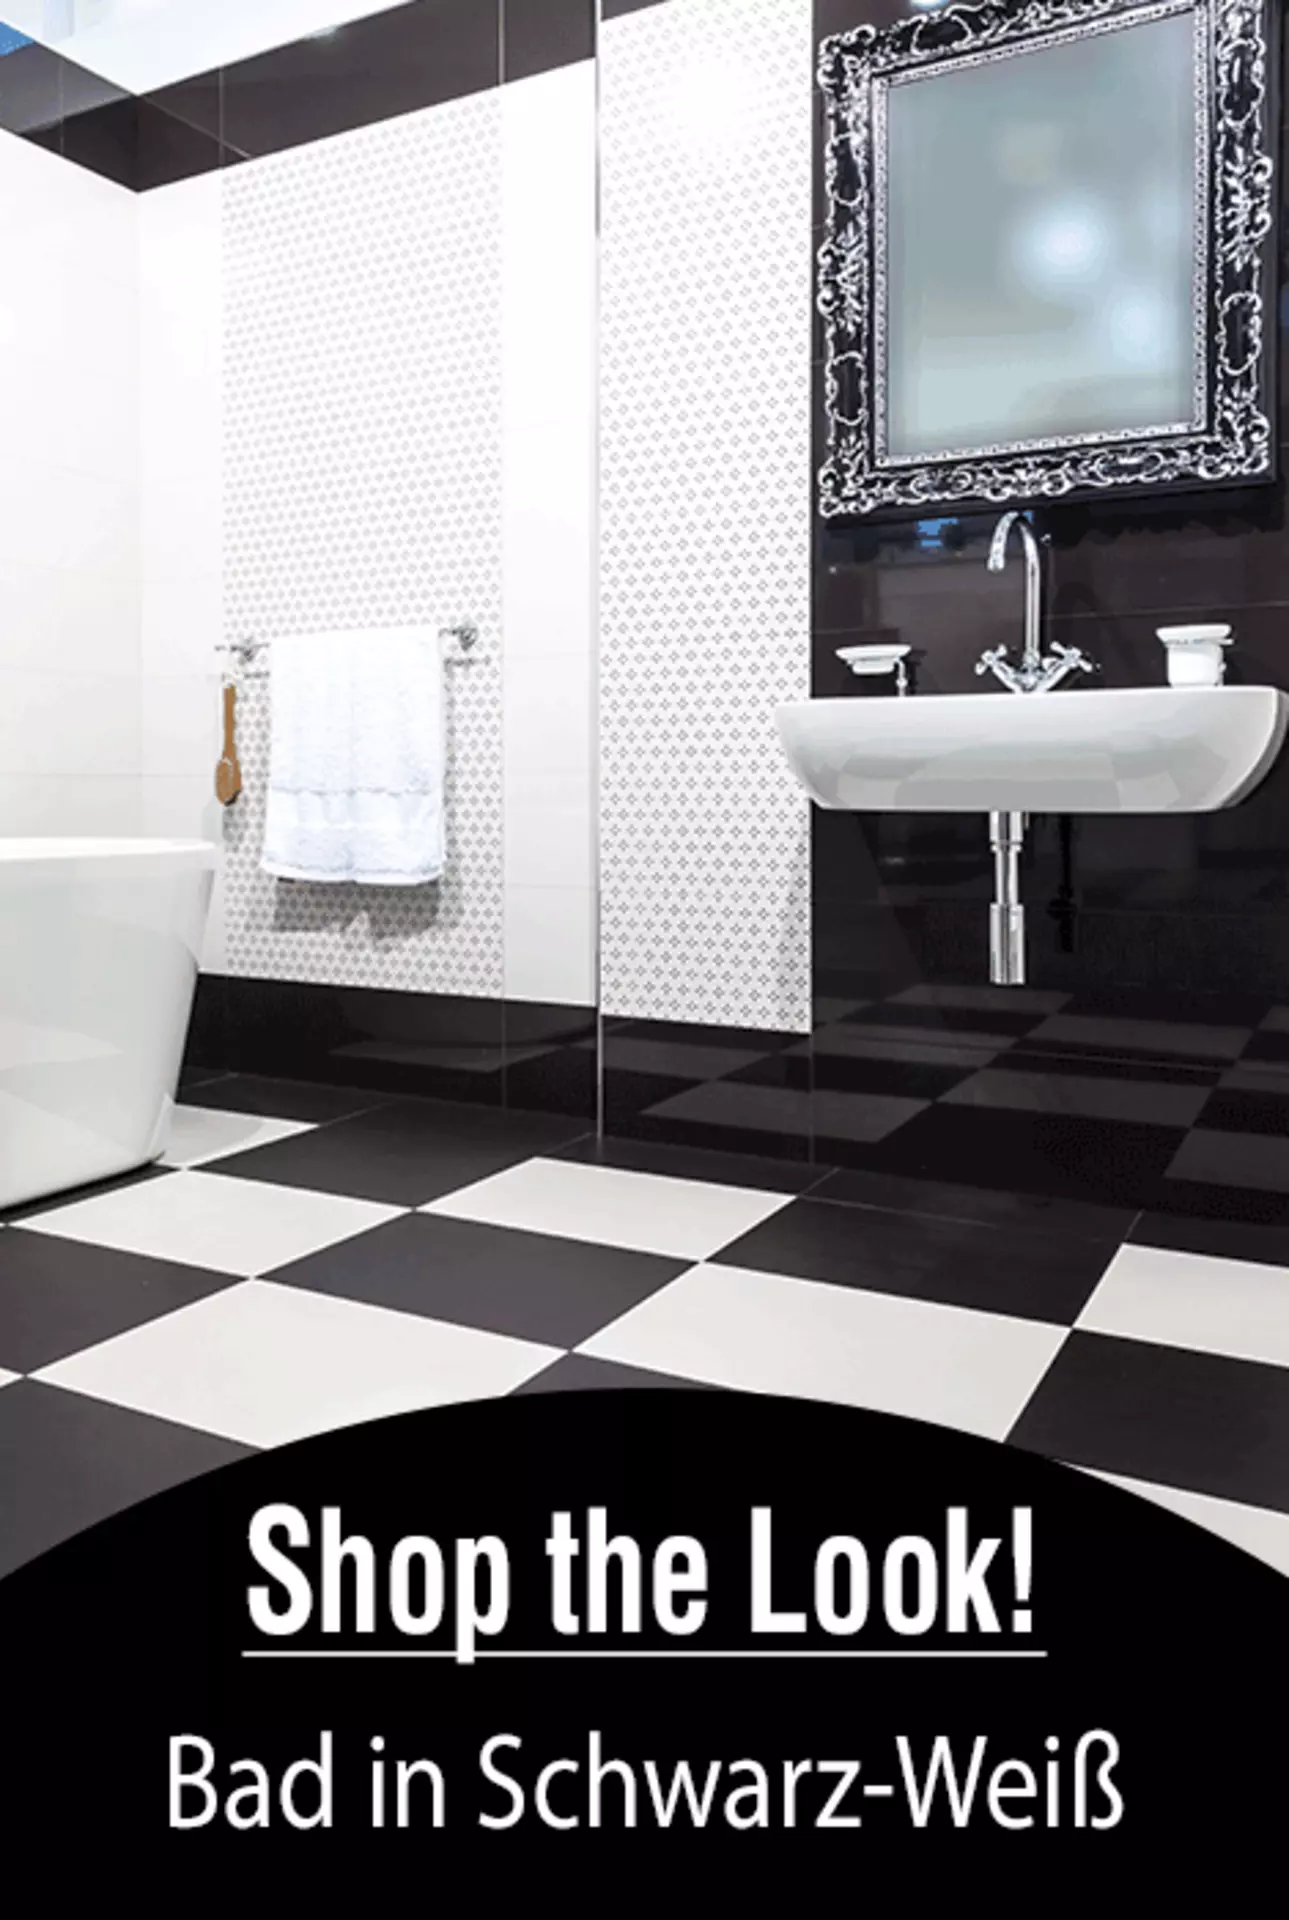 Badezimmer in Schwarz-Weiß. Jetzt den trendigen Look entdecken